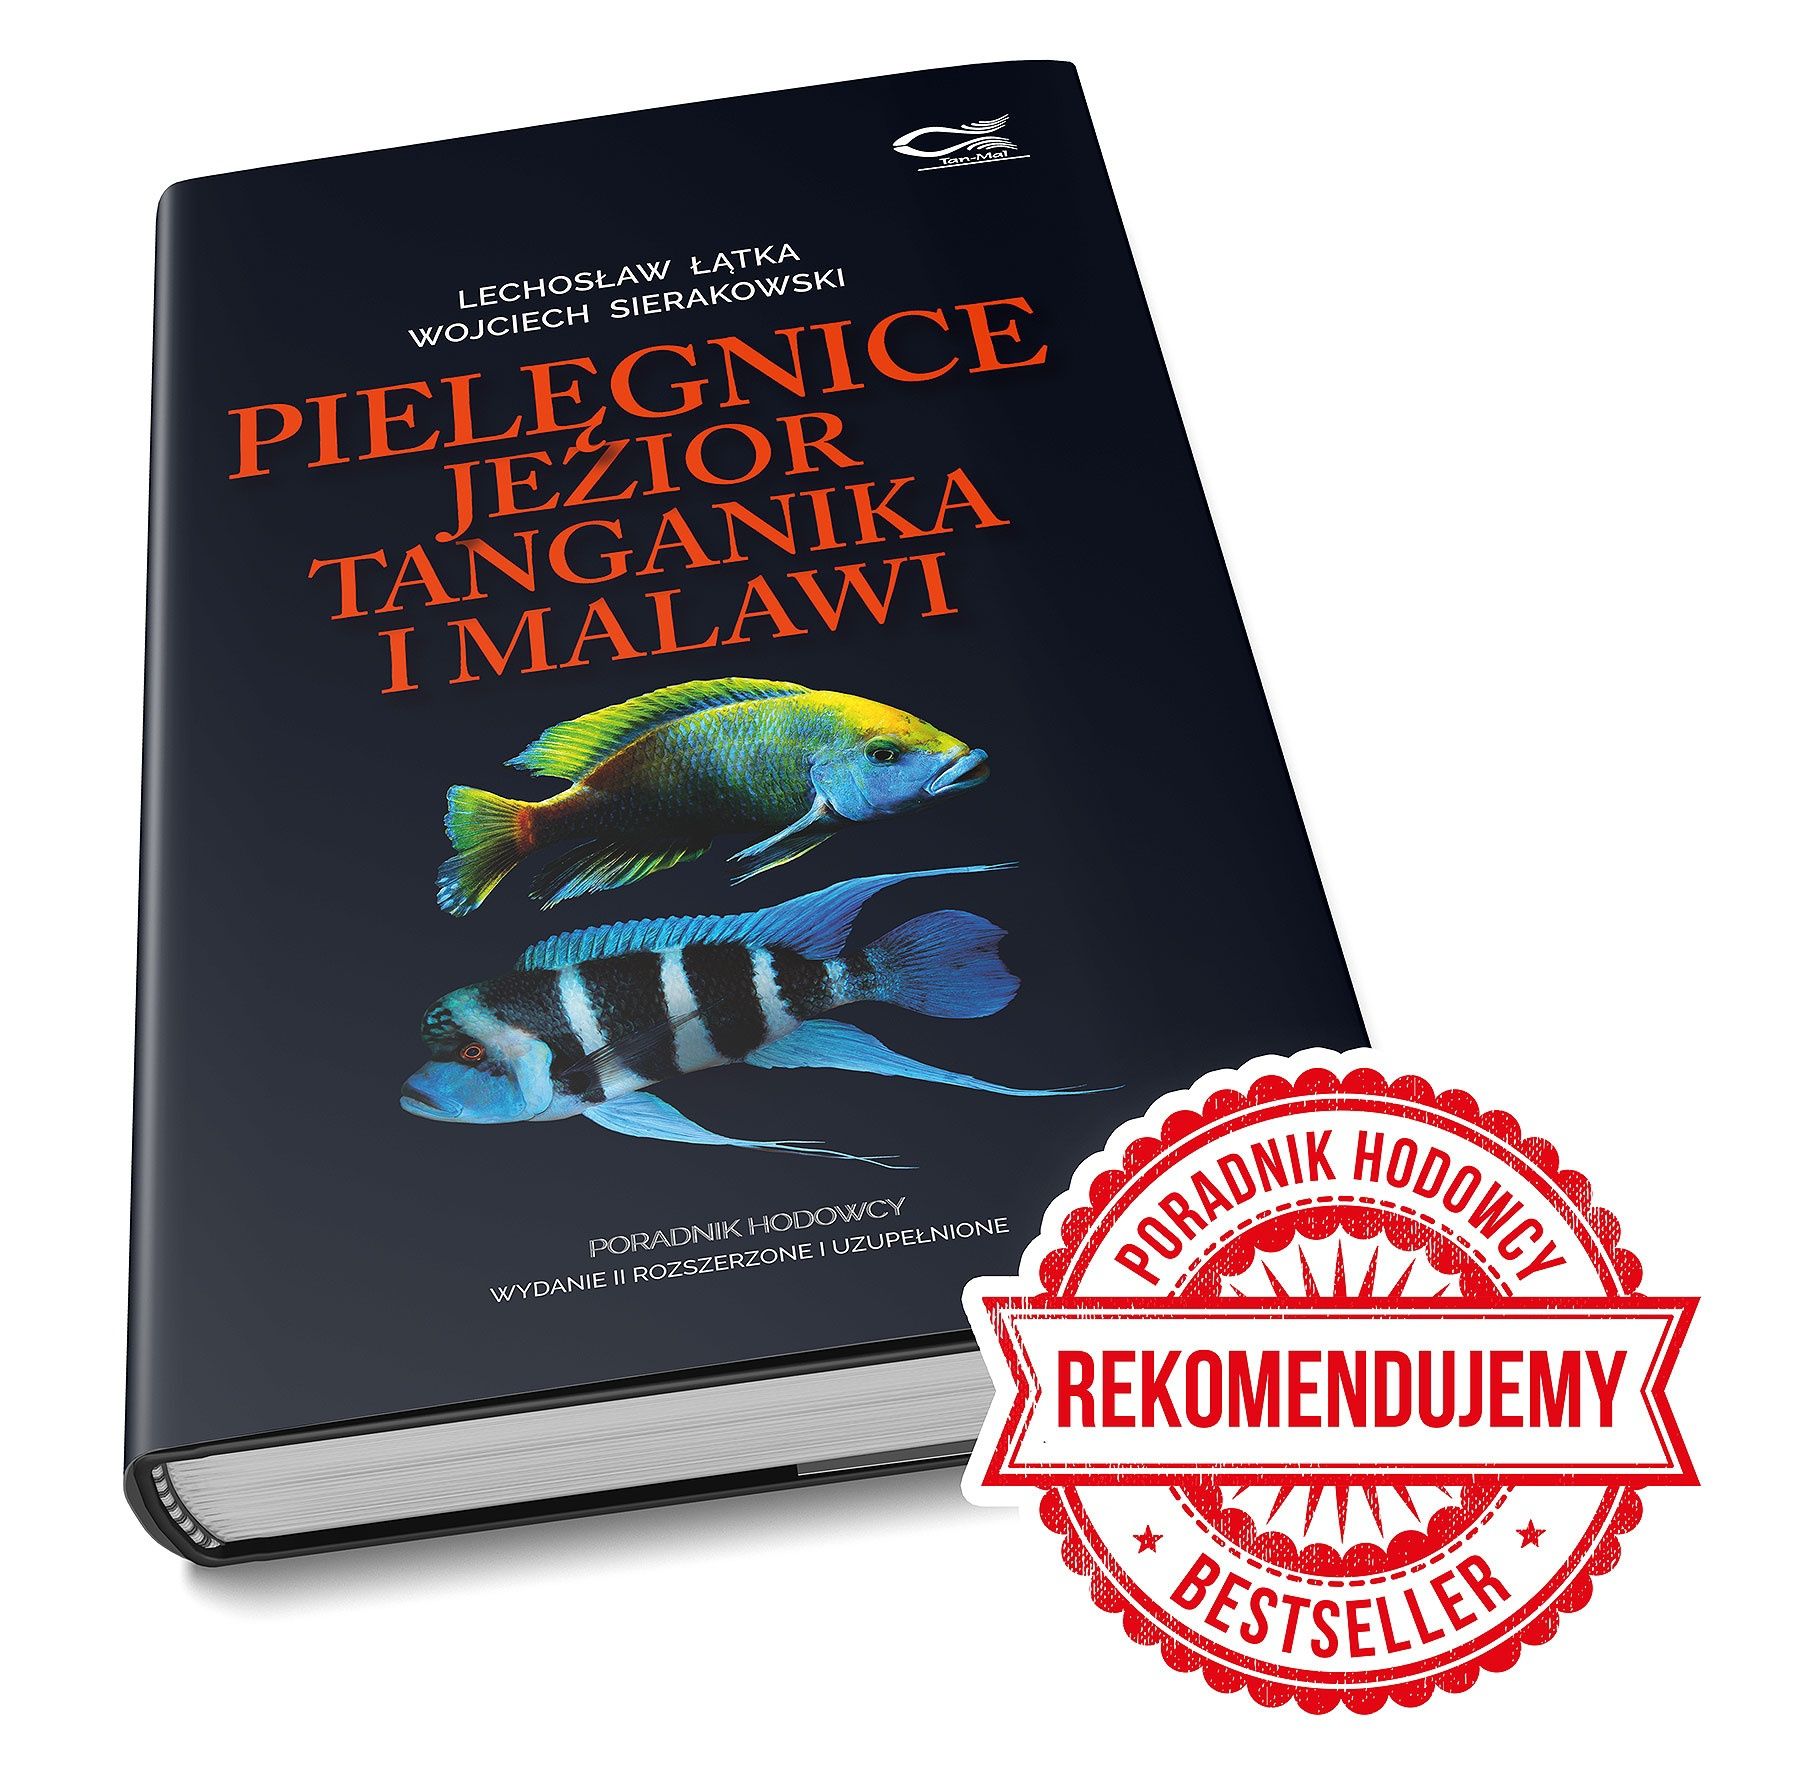 Pielęgnice jezior Tanganika i Malawi książka